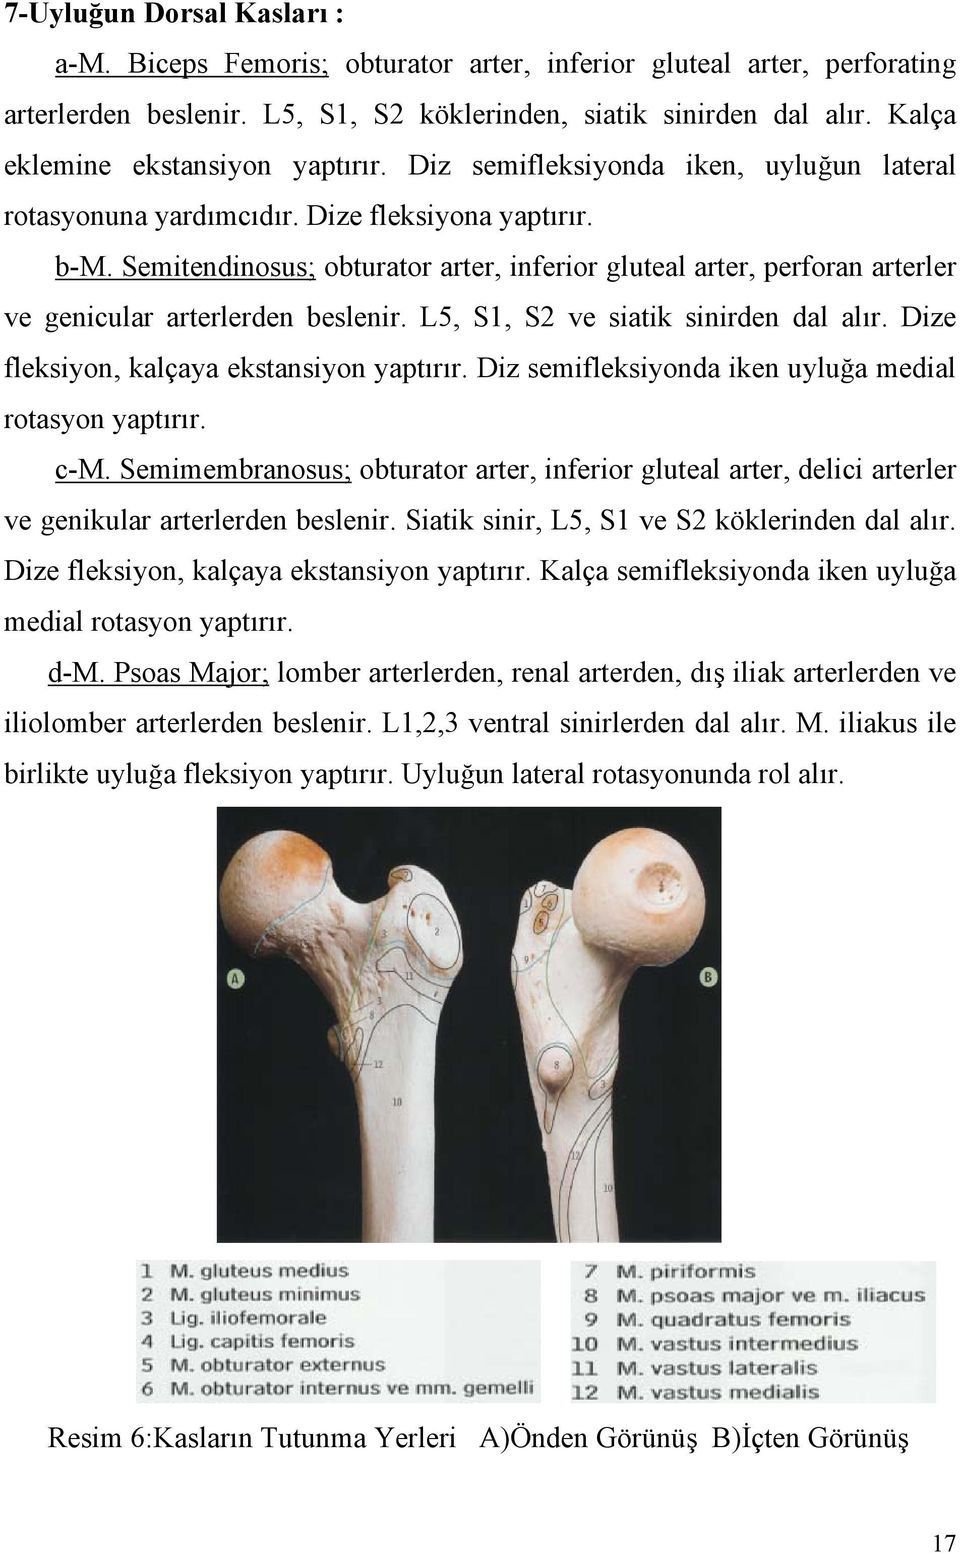 Semitendinosus; obturator arter, inferior gluteal arter, perforan arterler ve genicular arterlerden beslenir. L5, S1, S2 ve siatik sinirden dal alır. Dize fleksiyon, kalçaya ekstansiyon yaptırır.